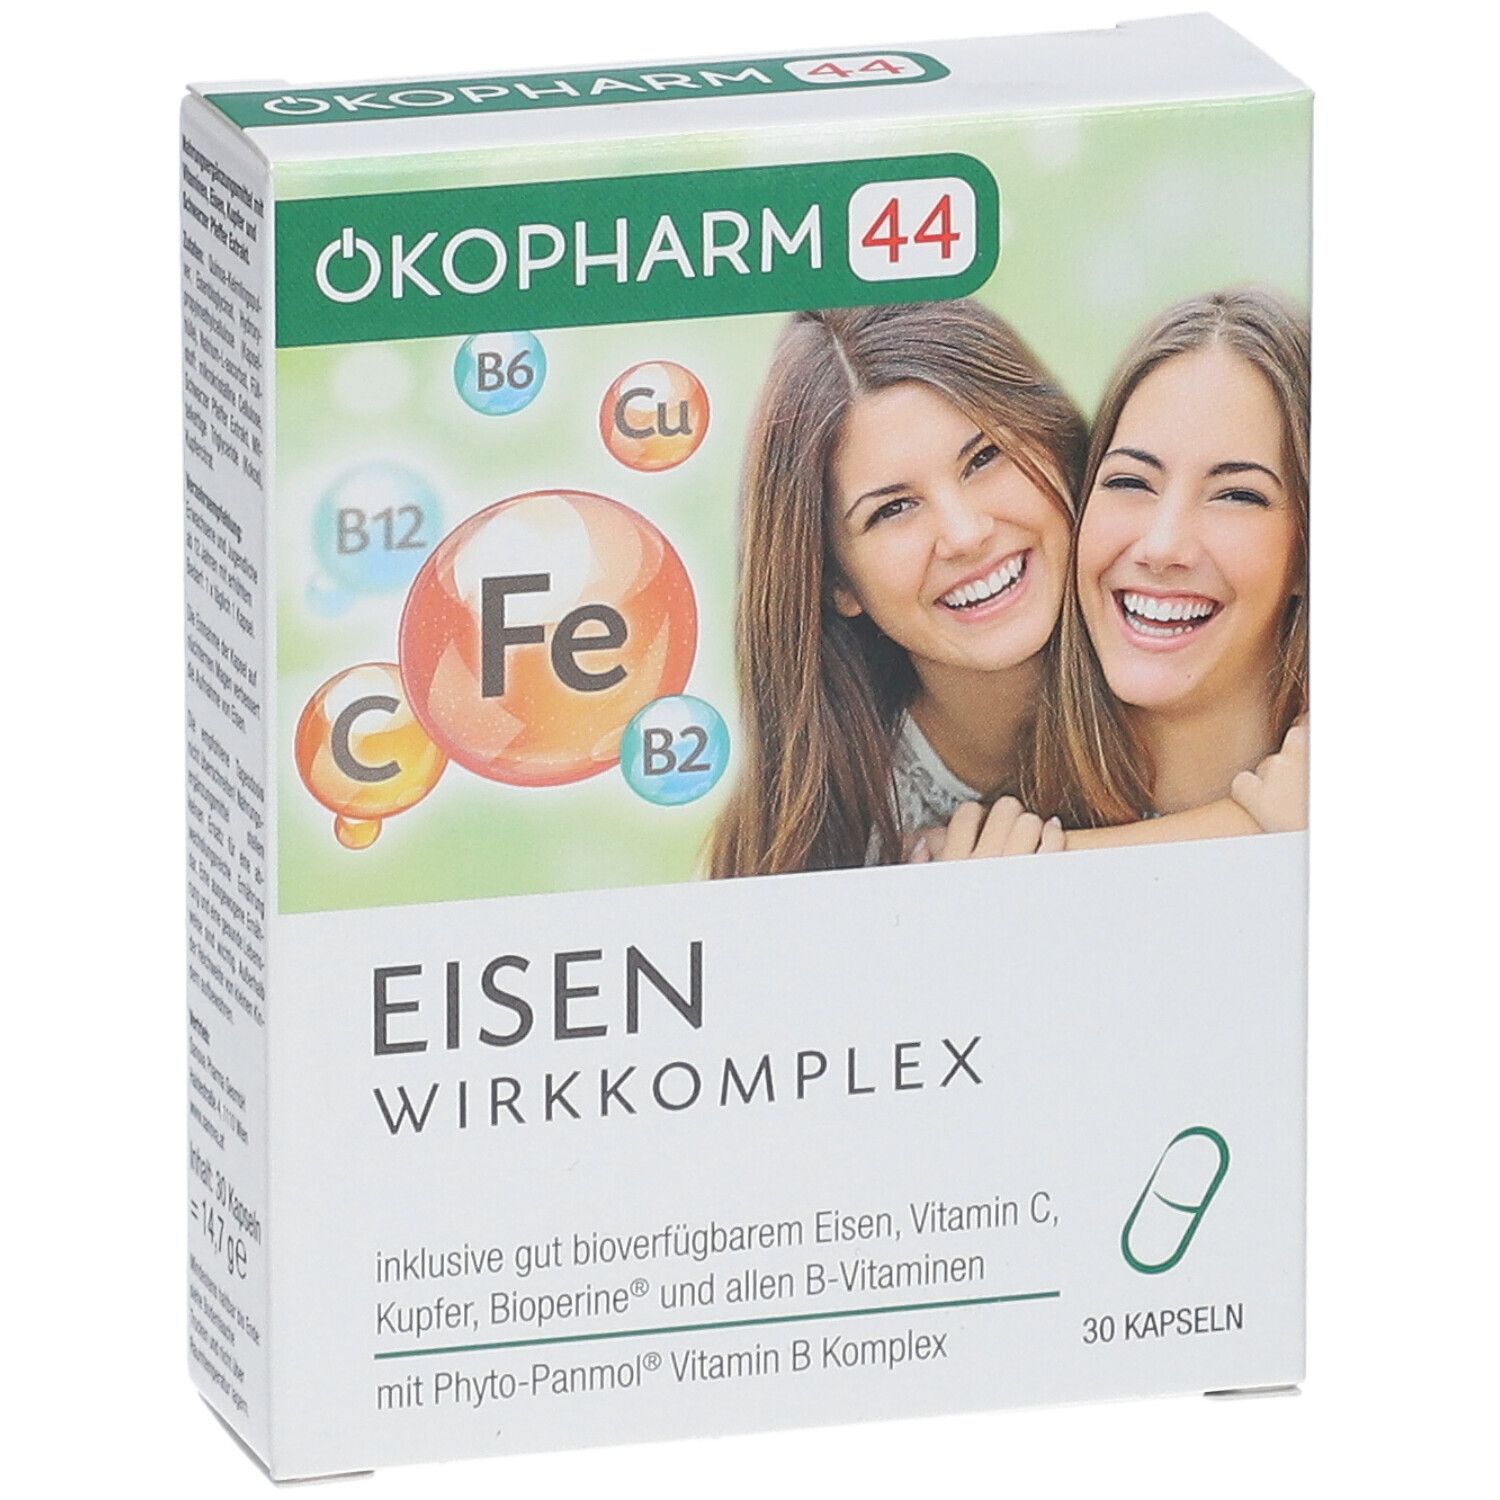 ÖKOPHARM44® EISEN WIRKKOMPLEX